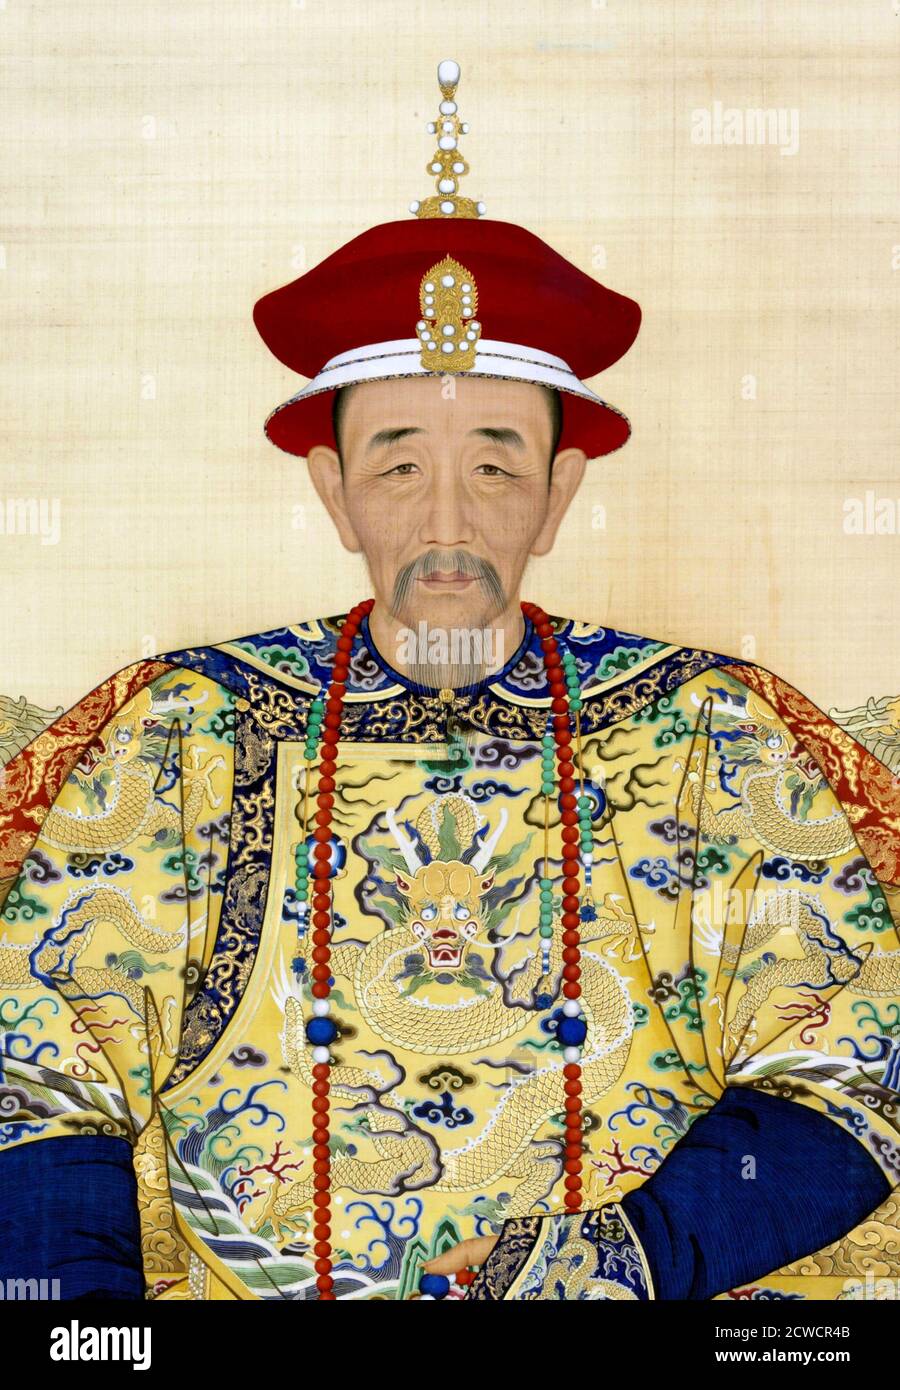 Ritratto dell'Imperatore Kangxi (nome Xuanye, 1654-1722), inchiostro su carta. Kangxi fu il quarto imperatore della dinastia Qing. Foto Stock